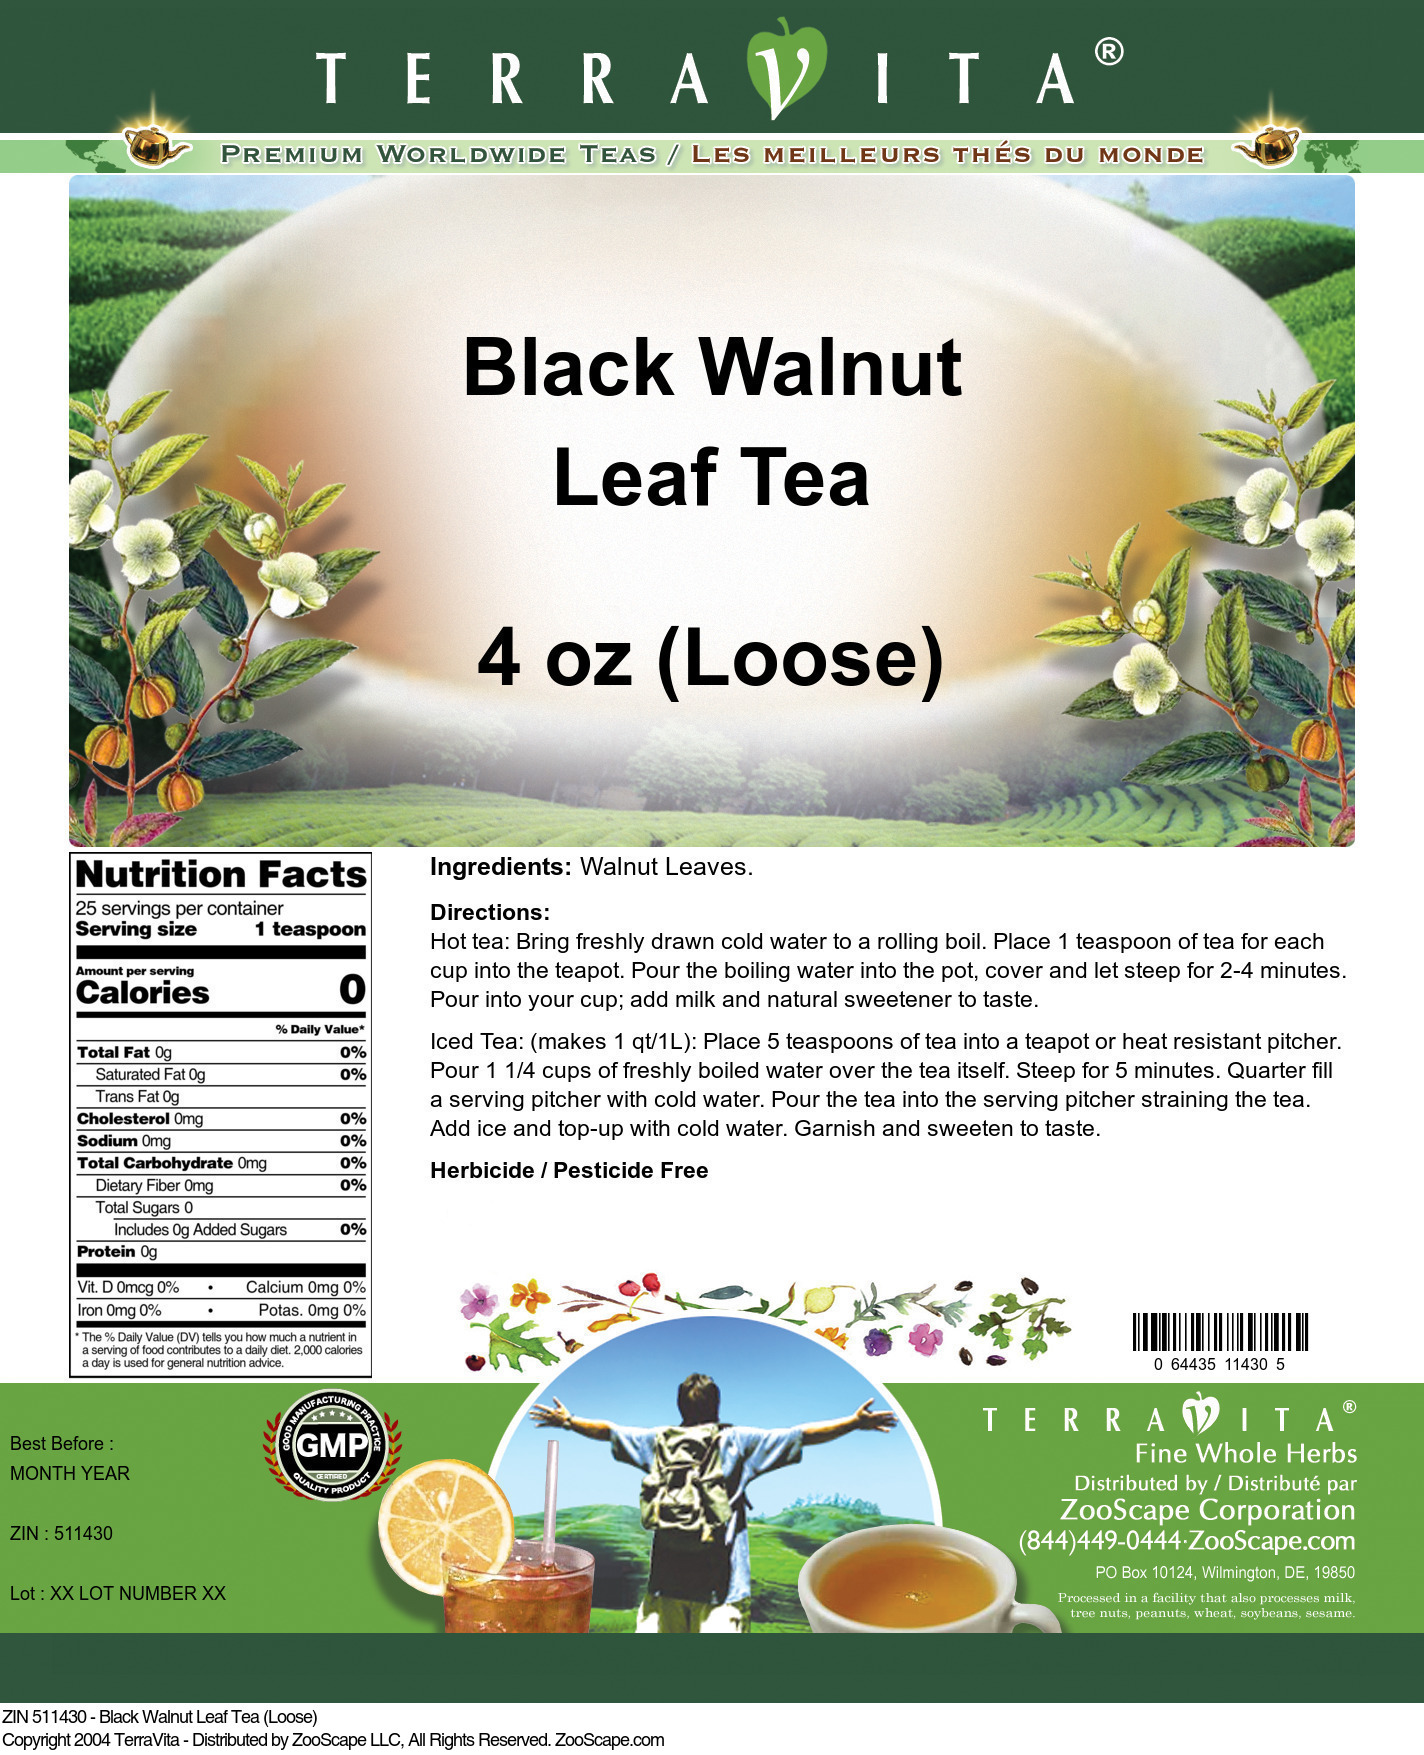 Black Walnut Leaf Tea (Loose) - Label